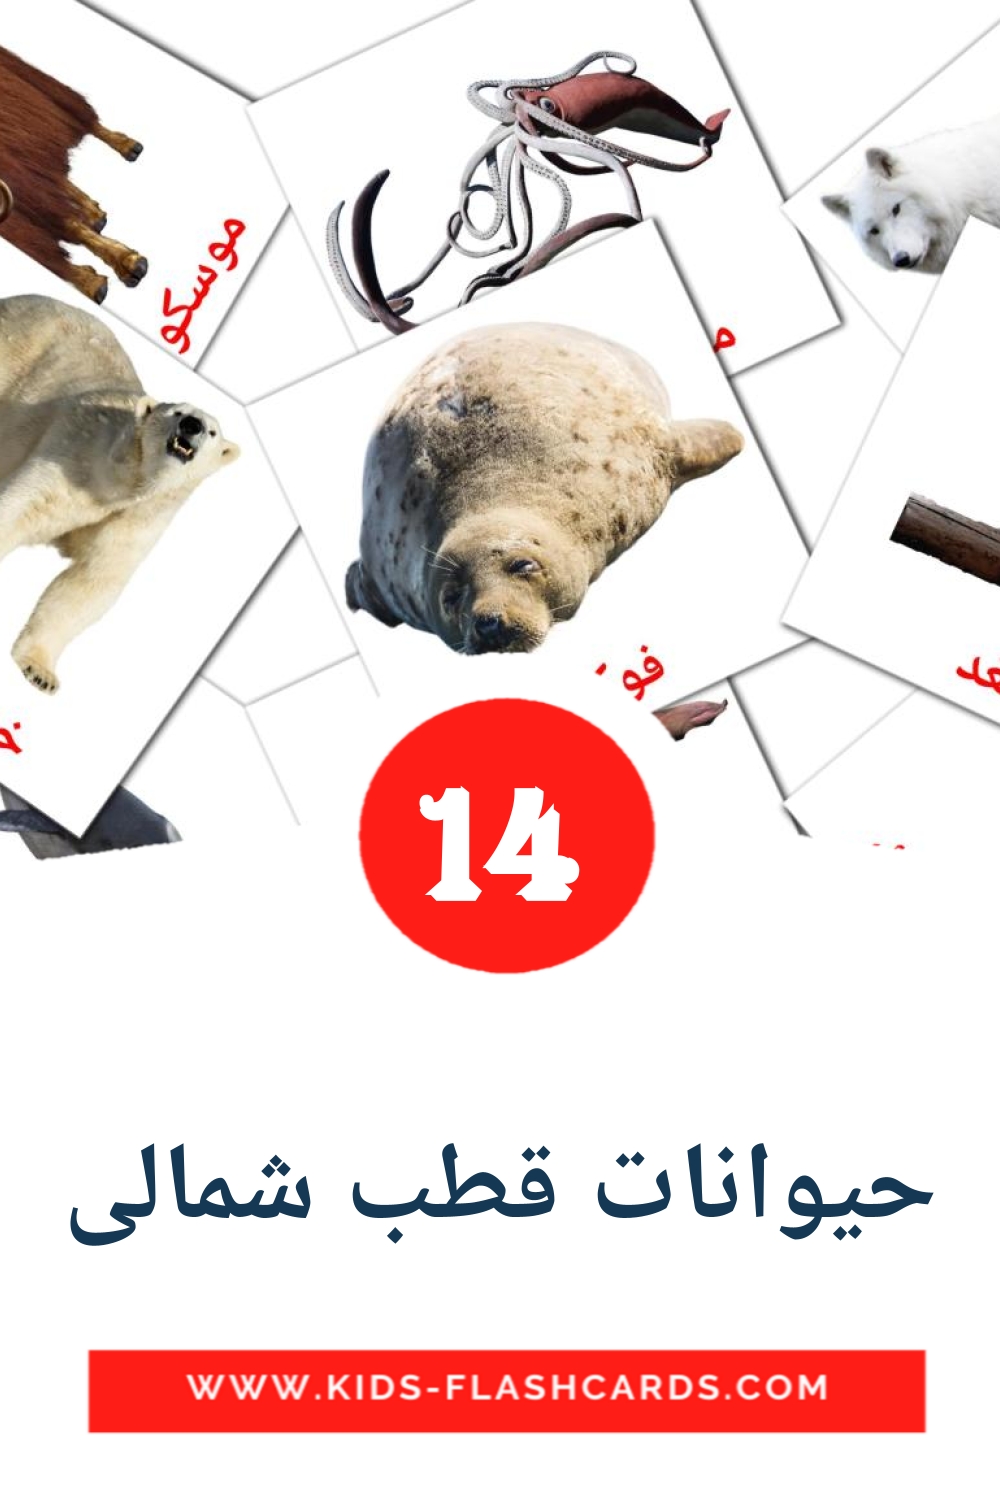 14 carte illustrate di حیوانات قطب شمالی per la scuola materna in persiano